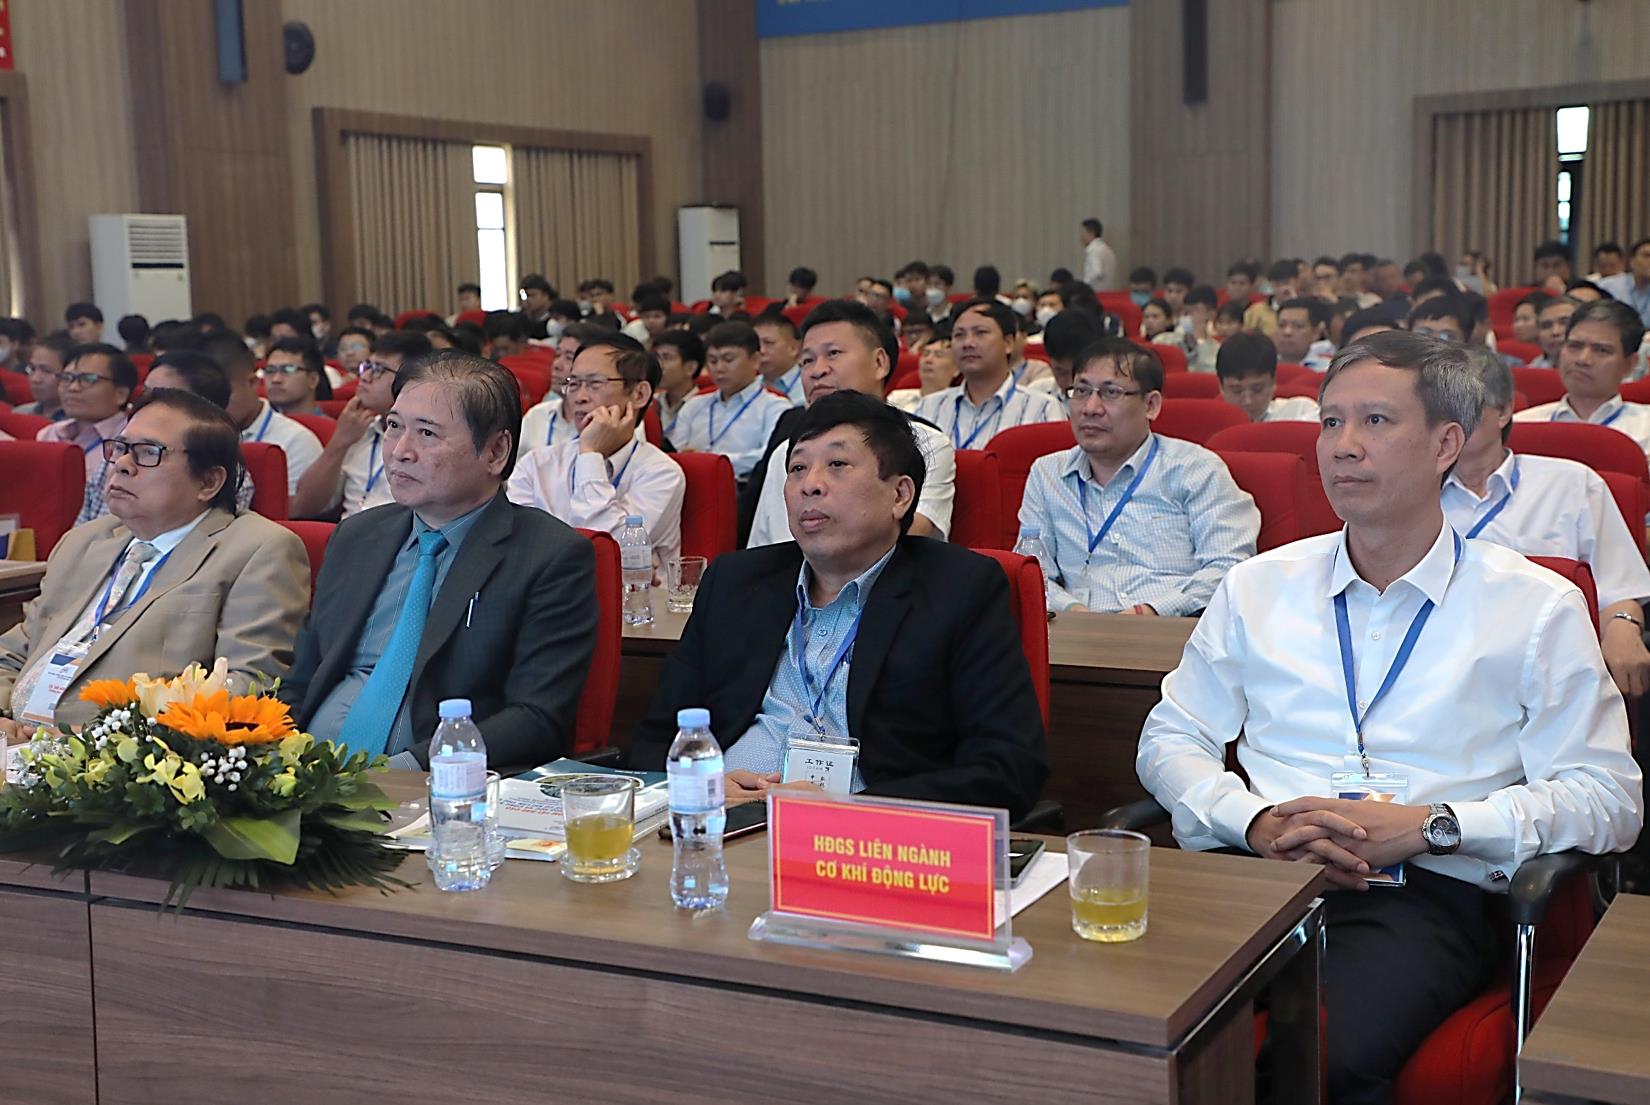 Tổng hội Cơ khí Việt Nam và Trường Đại học Công nghiệp Hà Nội tổ chức Hội nghị Khoa học và Công nghệ toàn quốc về Cơ khí lần thứ VII